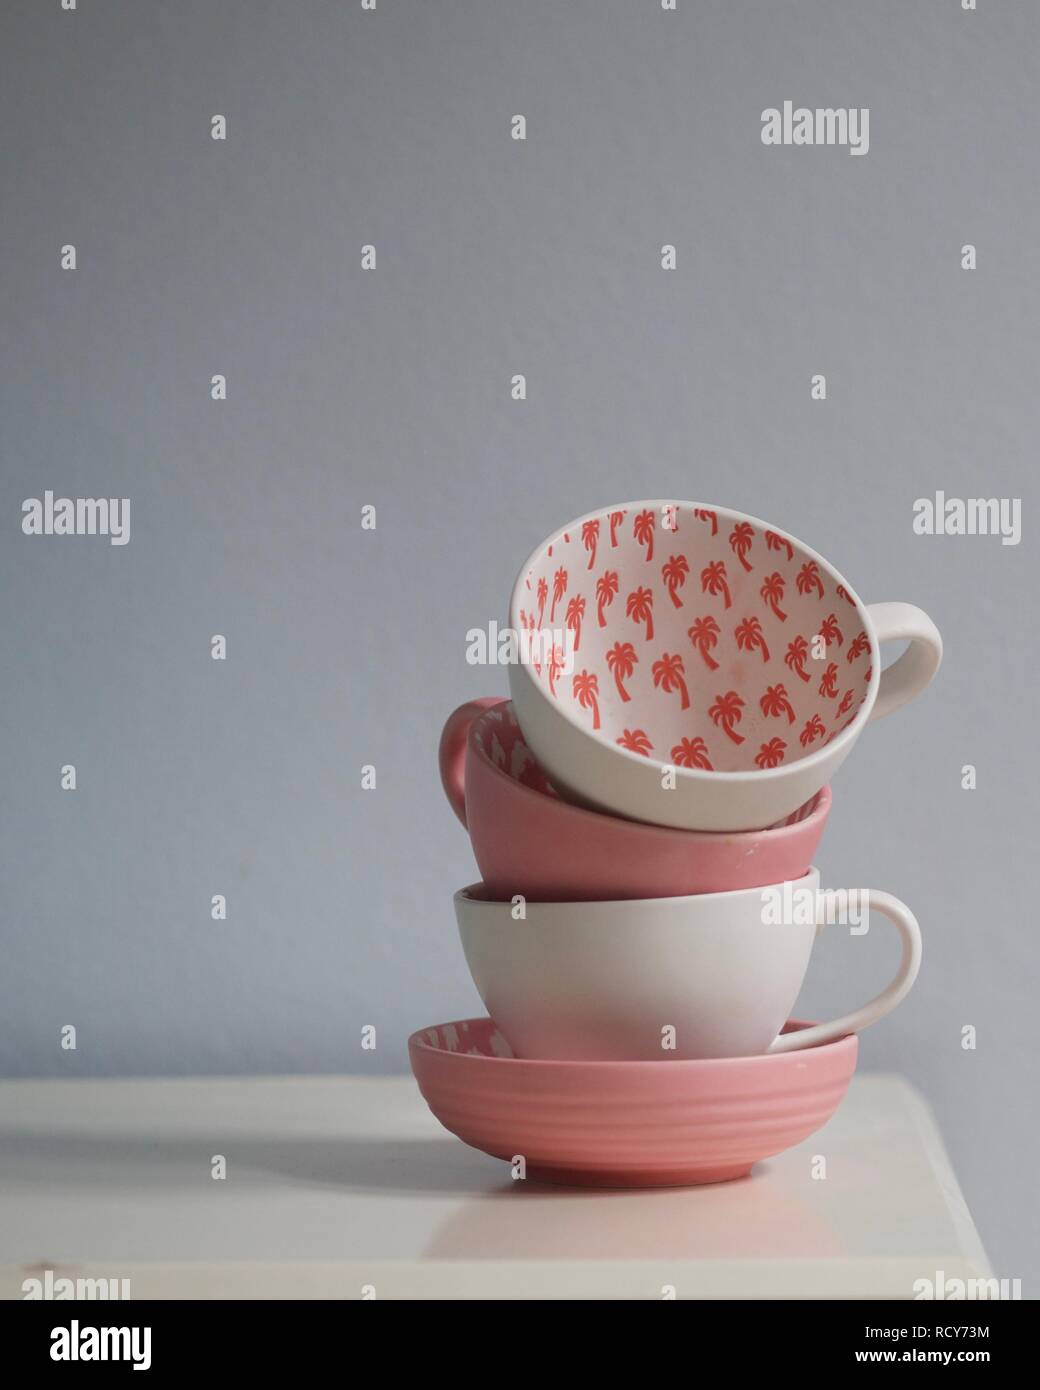 In der Nähe von Coral Pink und White Tea Cups auf weißen Tisch gestapelt. Cups mit Palm Tree Muster eingerichtet. Pantone-Farbe des Jahres 2019 - lebende Koralle. Stockfoto